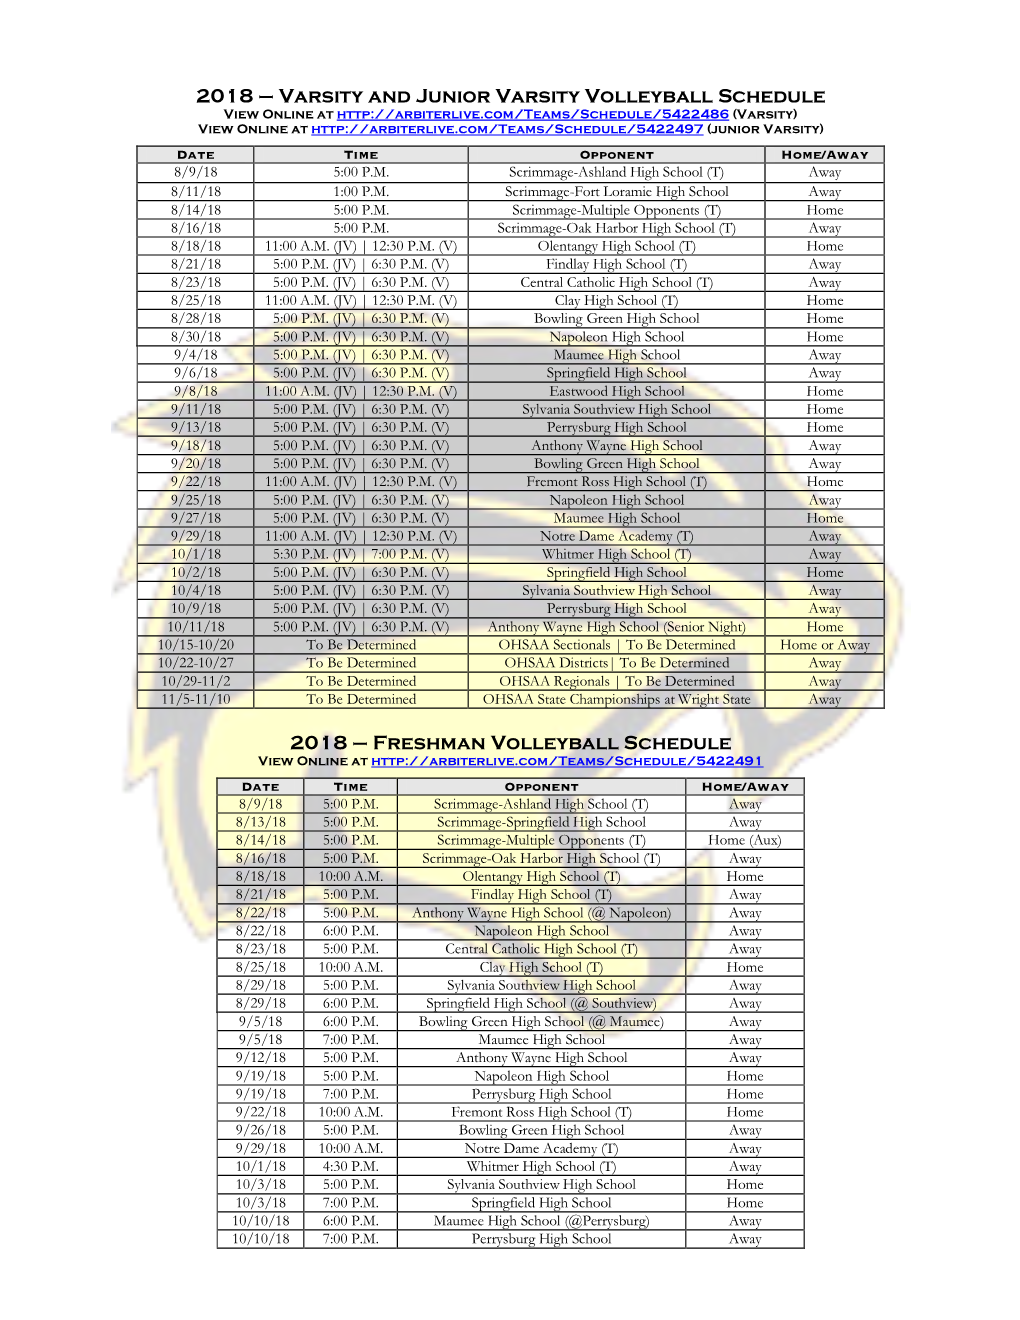 Freshman Volleyball Schedule View Online At